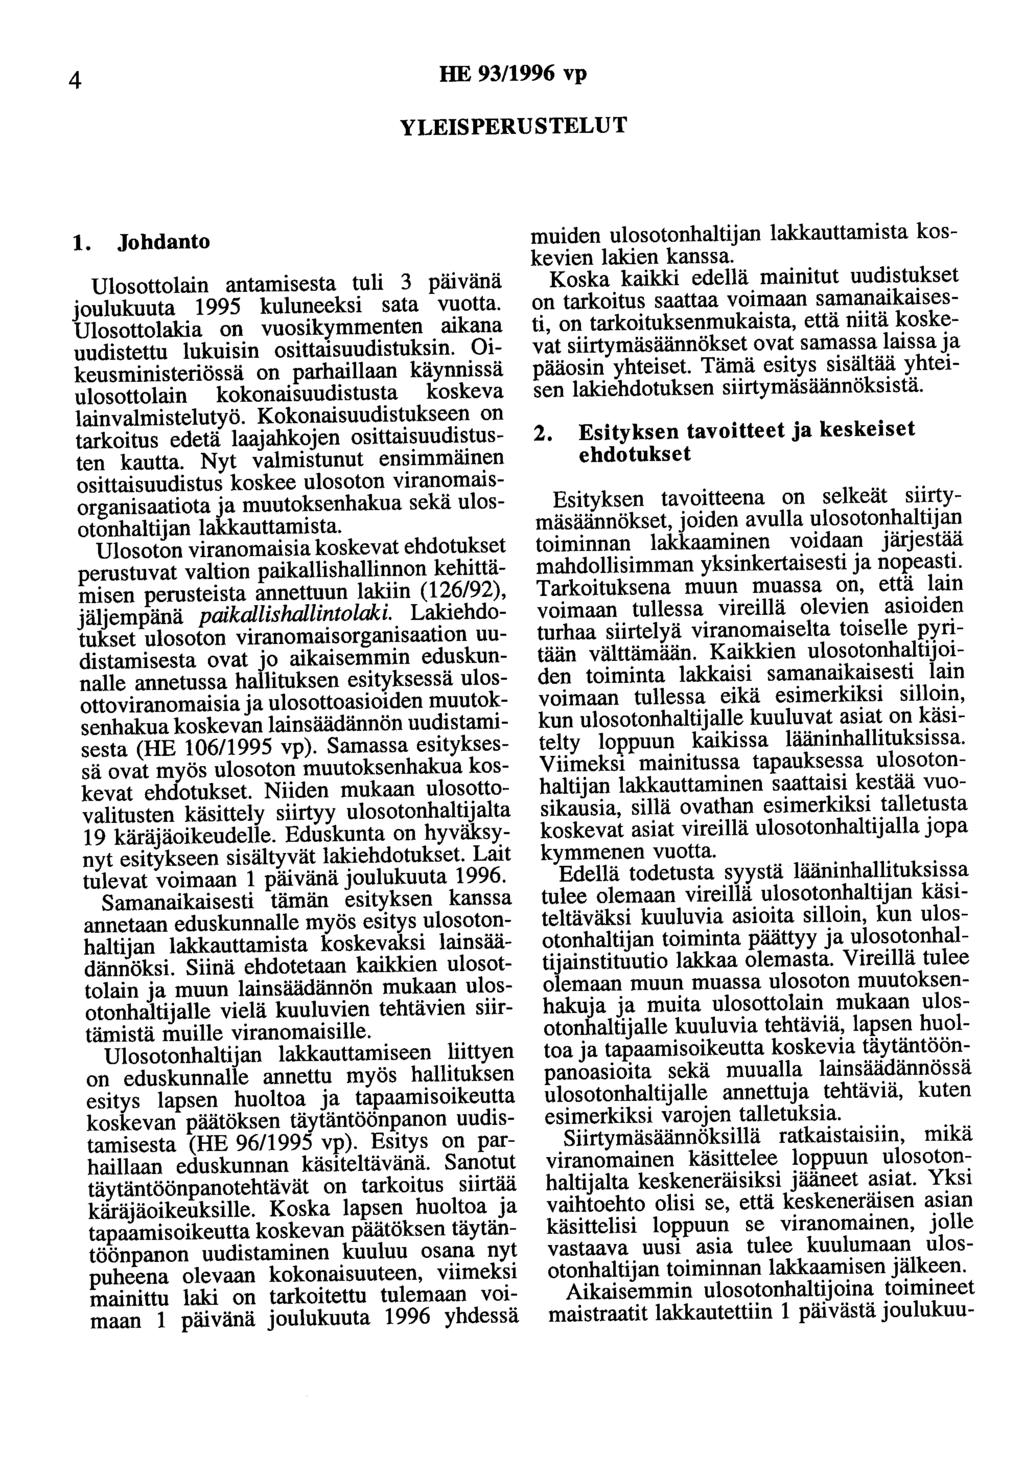 4 HE 93/1996 vp YLEISPERUSTELUT 1. Johdanto Ulosottolain antamisesta tuli 3 pruvana joulukuuta 1995 kuluneeksi sata vuotta.